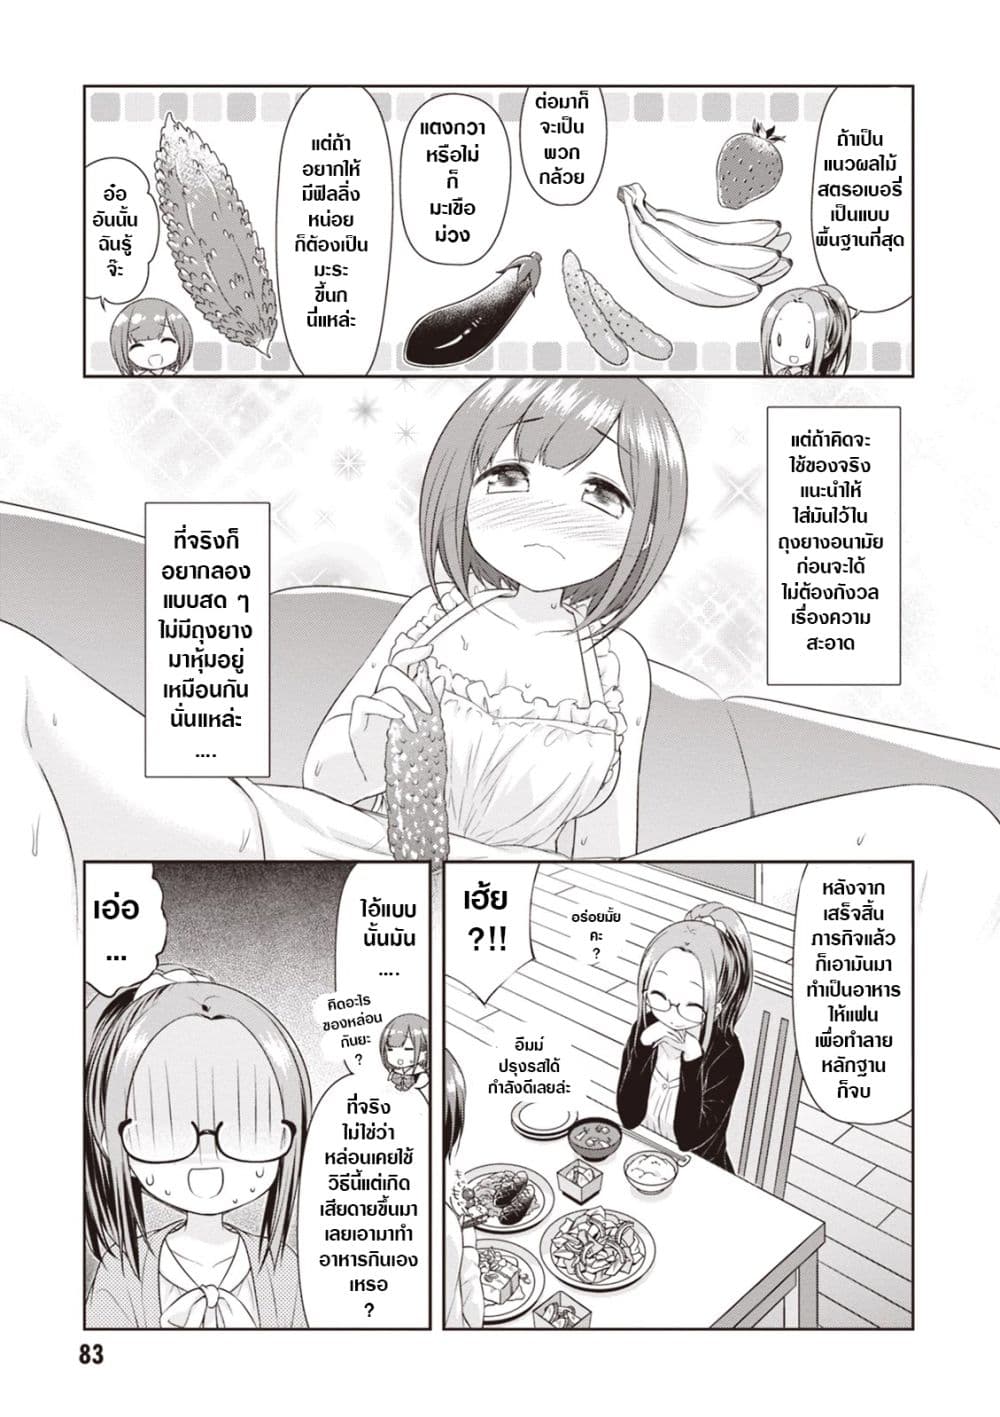 A Girl Meets Sex Toys Akane Oguri Indulge In Onanism 5 (9)